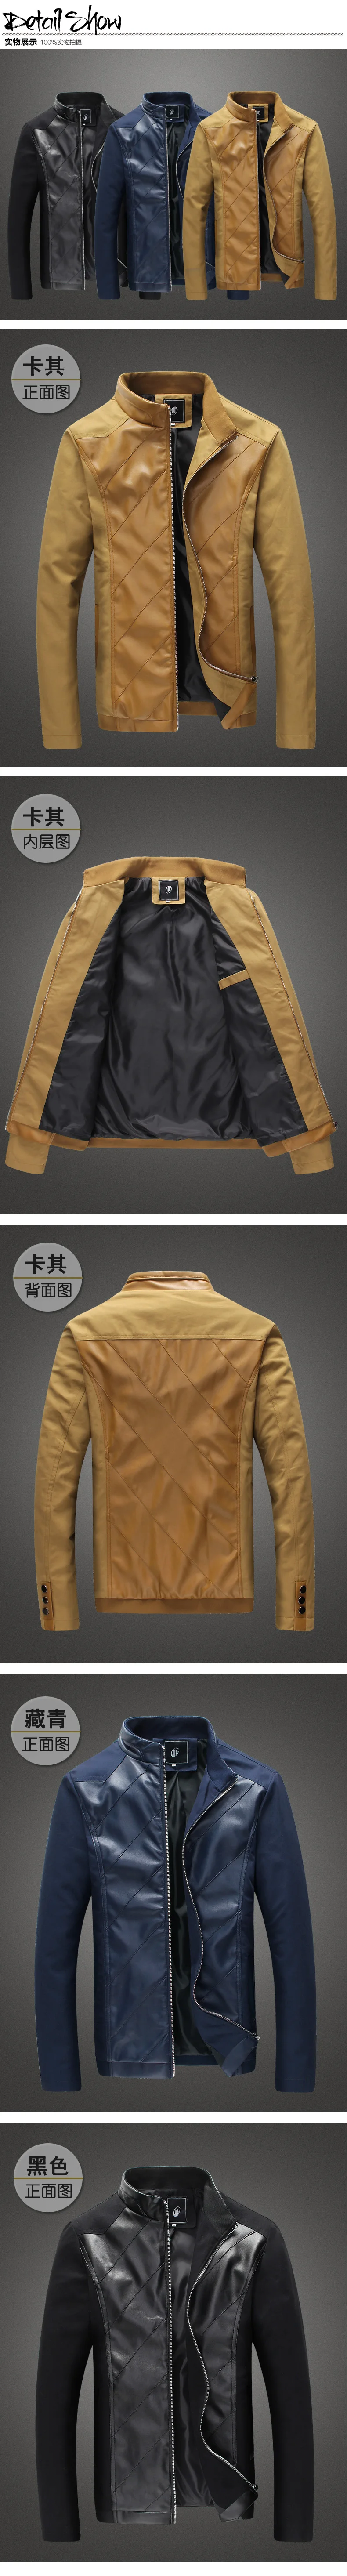 Новая стильная модная мужская куртка для досуга искусственная кожа тонкая мужская повседневная кожаная куртка черного и синего цвета